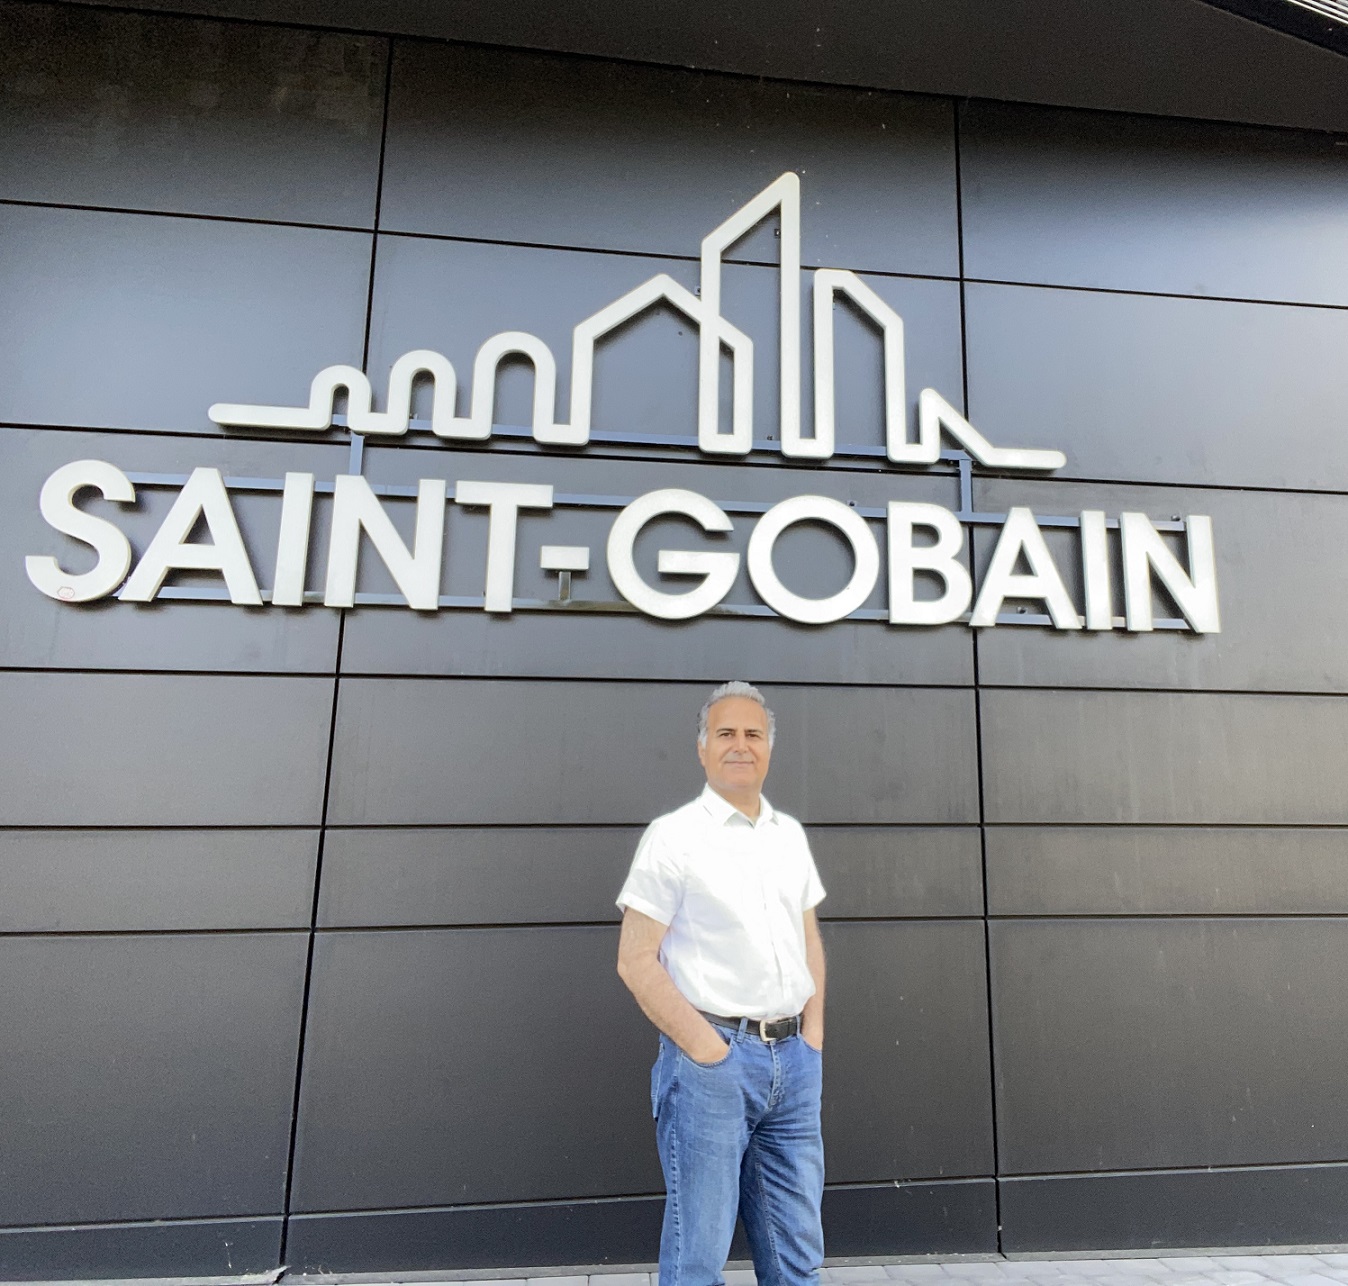 Saint Gobain is our neighbor  